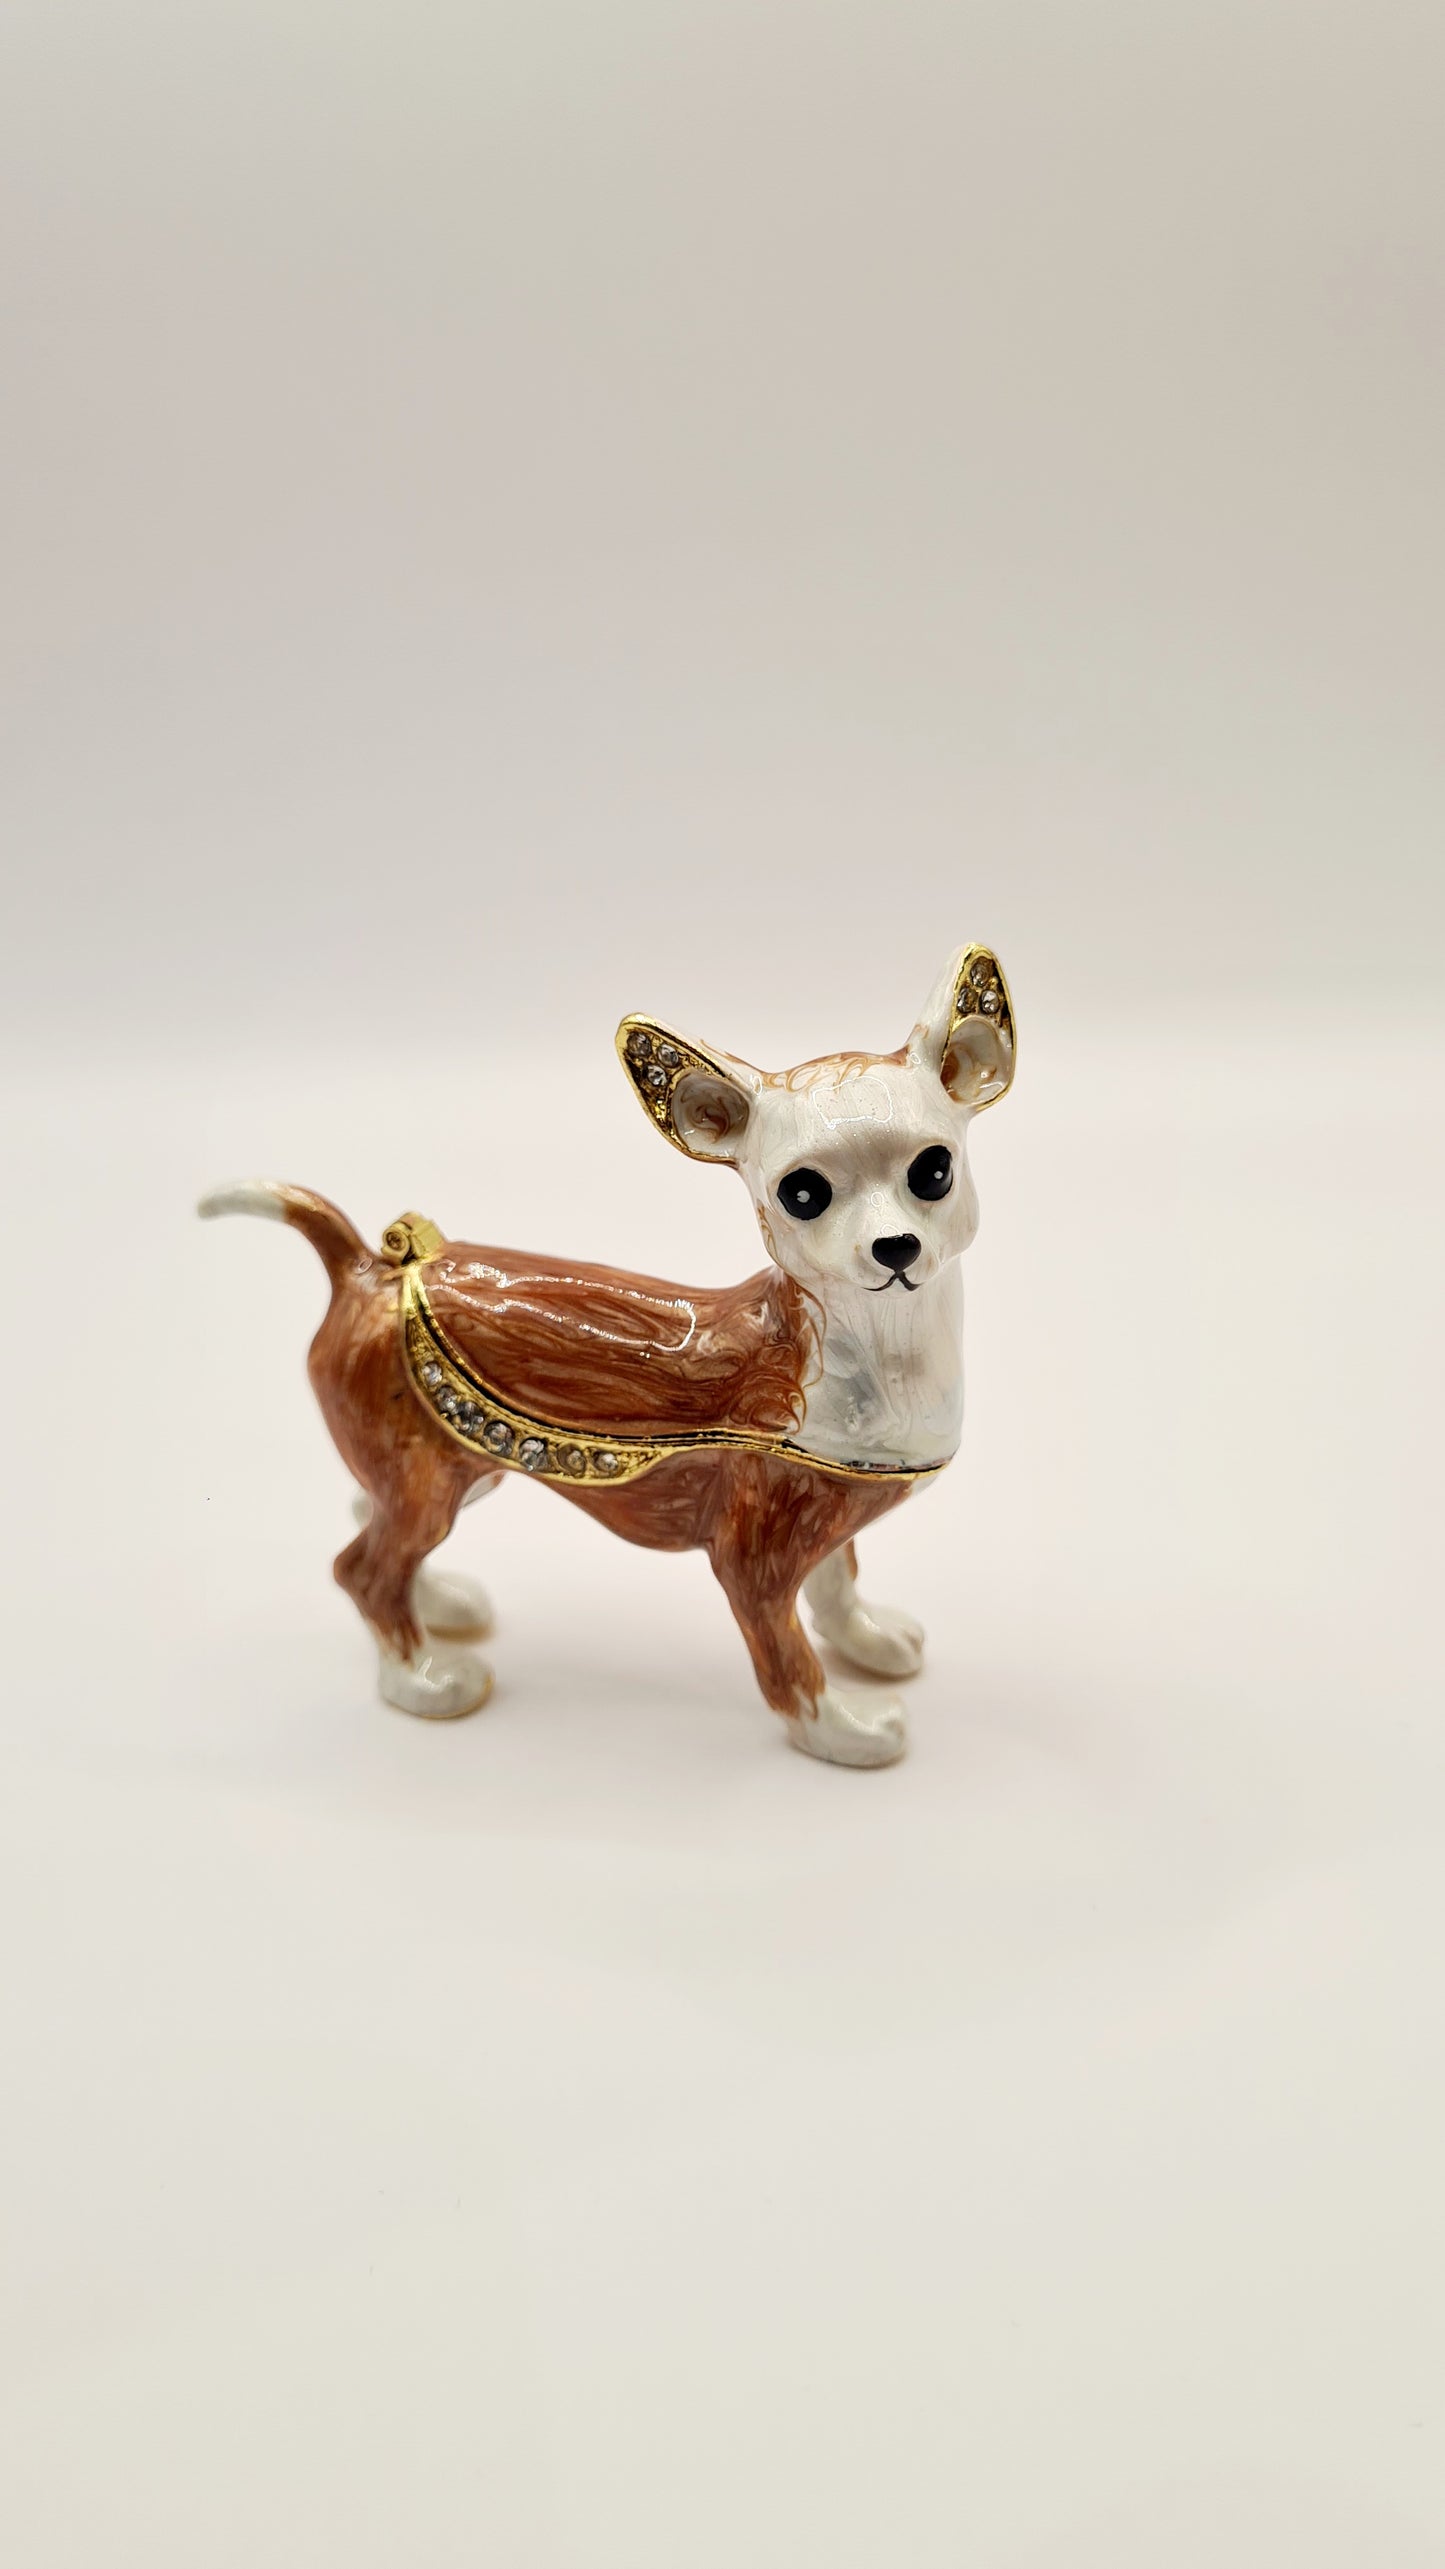 Boîte métallique, chien Chihuahua. Longueur 7 centimètres